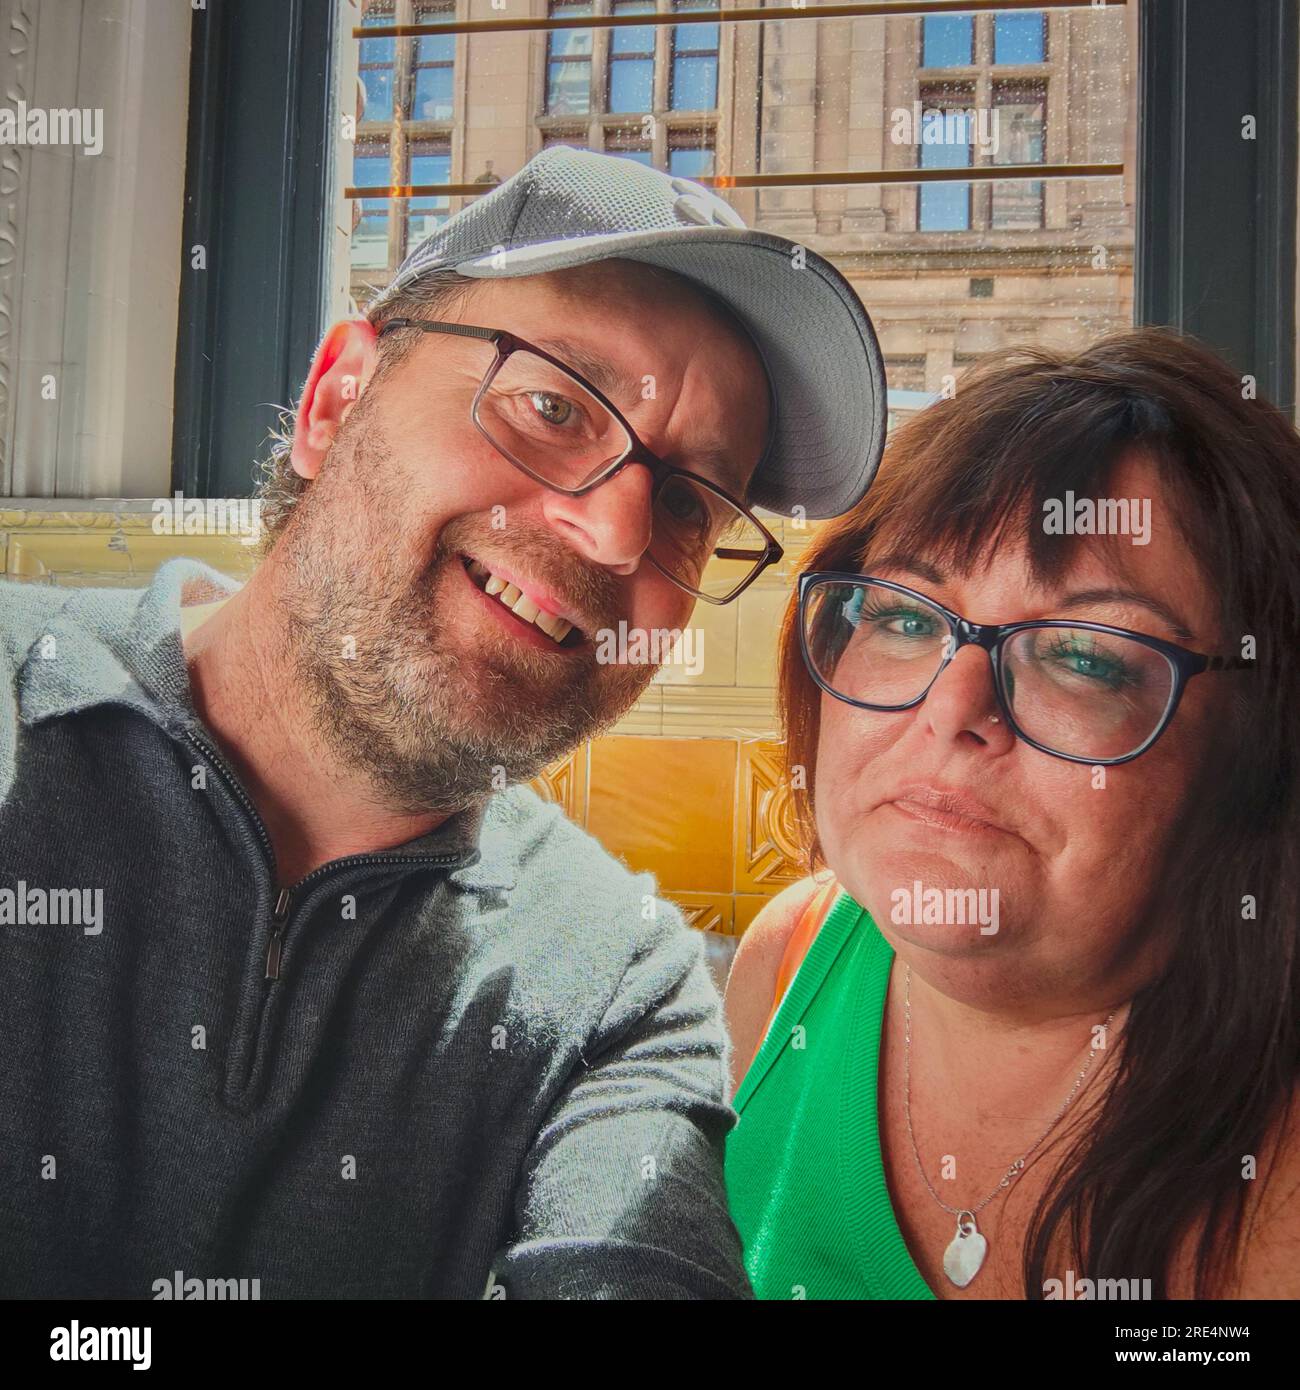 La coppia di mezza età con gli occhiali seduti in una casa pubblica sorridente davanti alla fotocamera.il modello è disponibile se necessario. Foto Stock